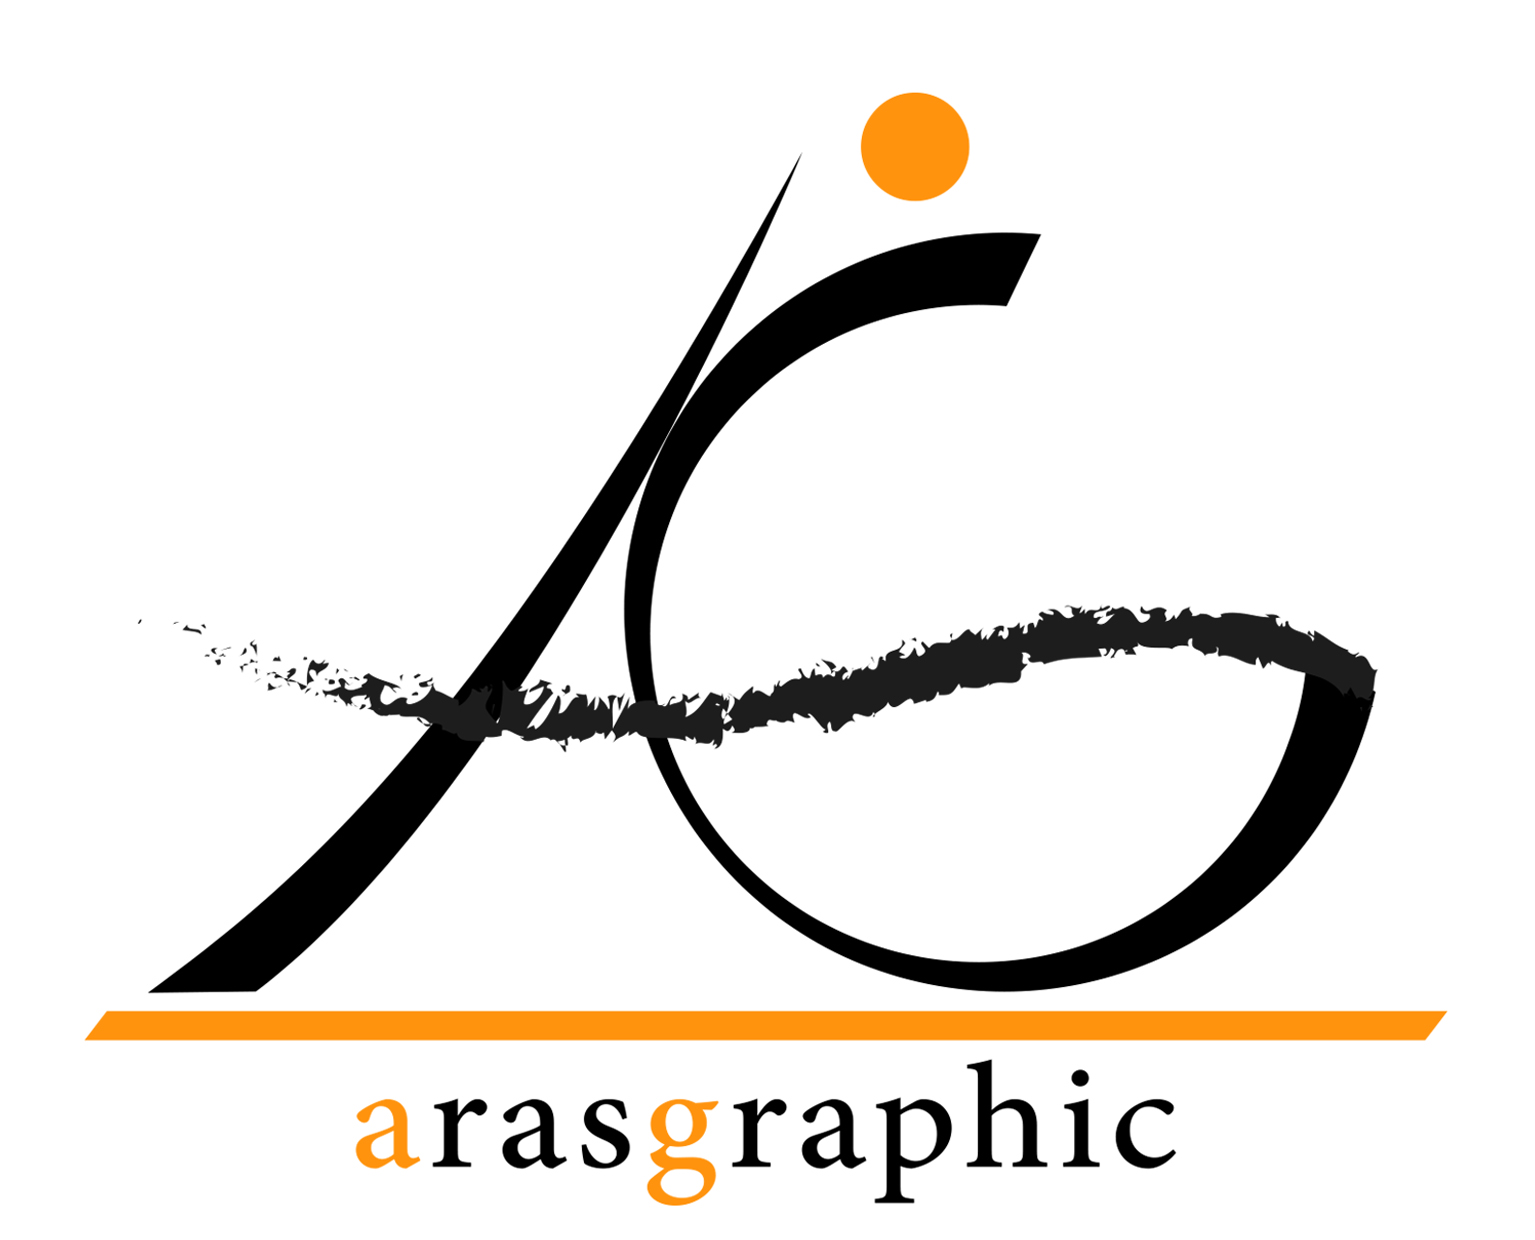 Arasgraphic